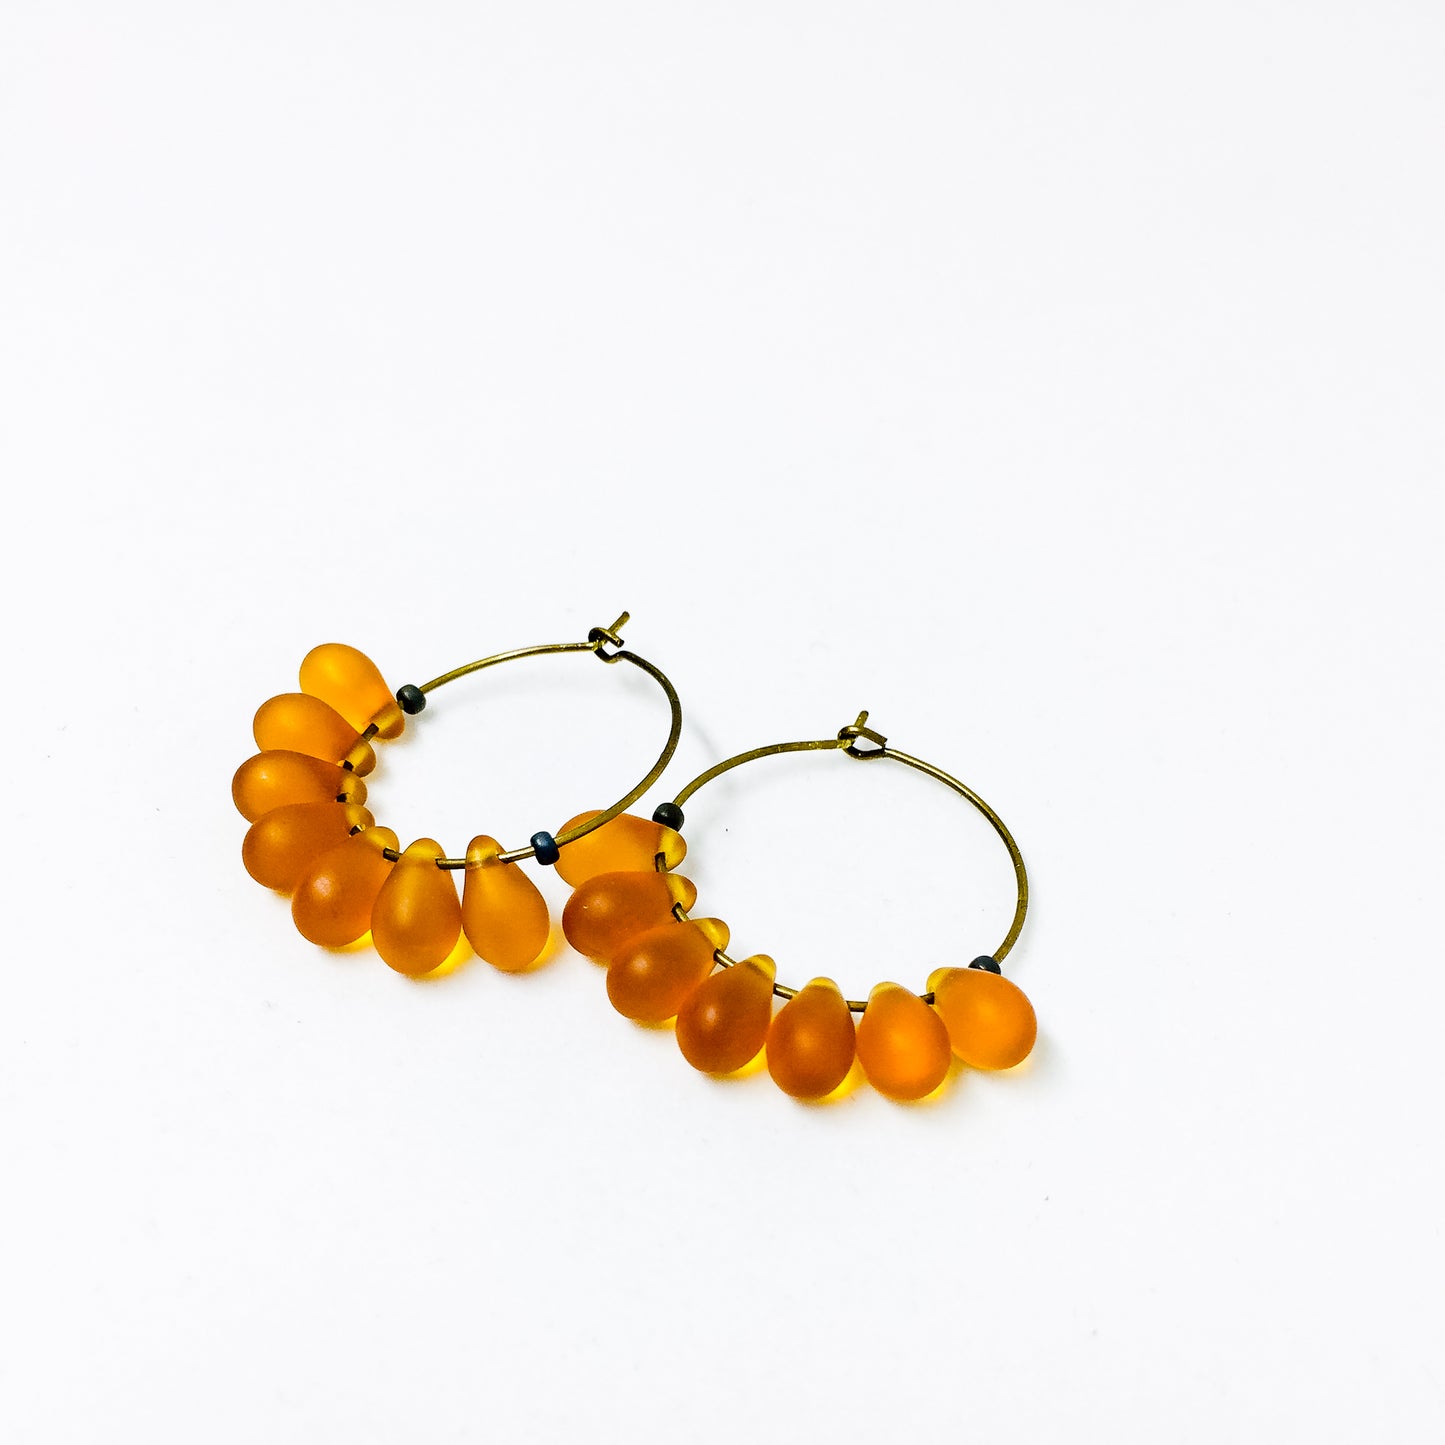 Dewdrop beaded glass hoop earrings in amber